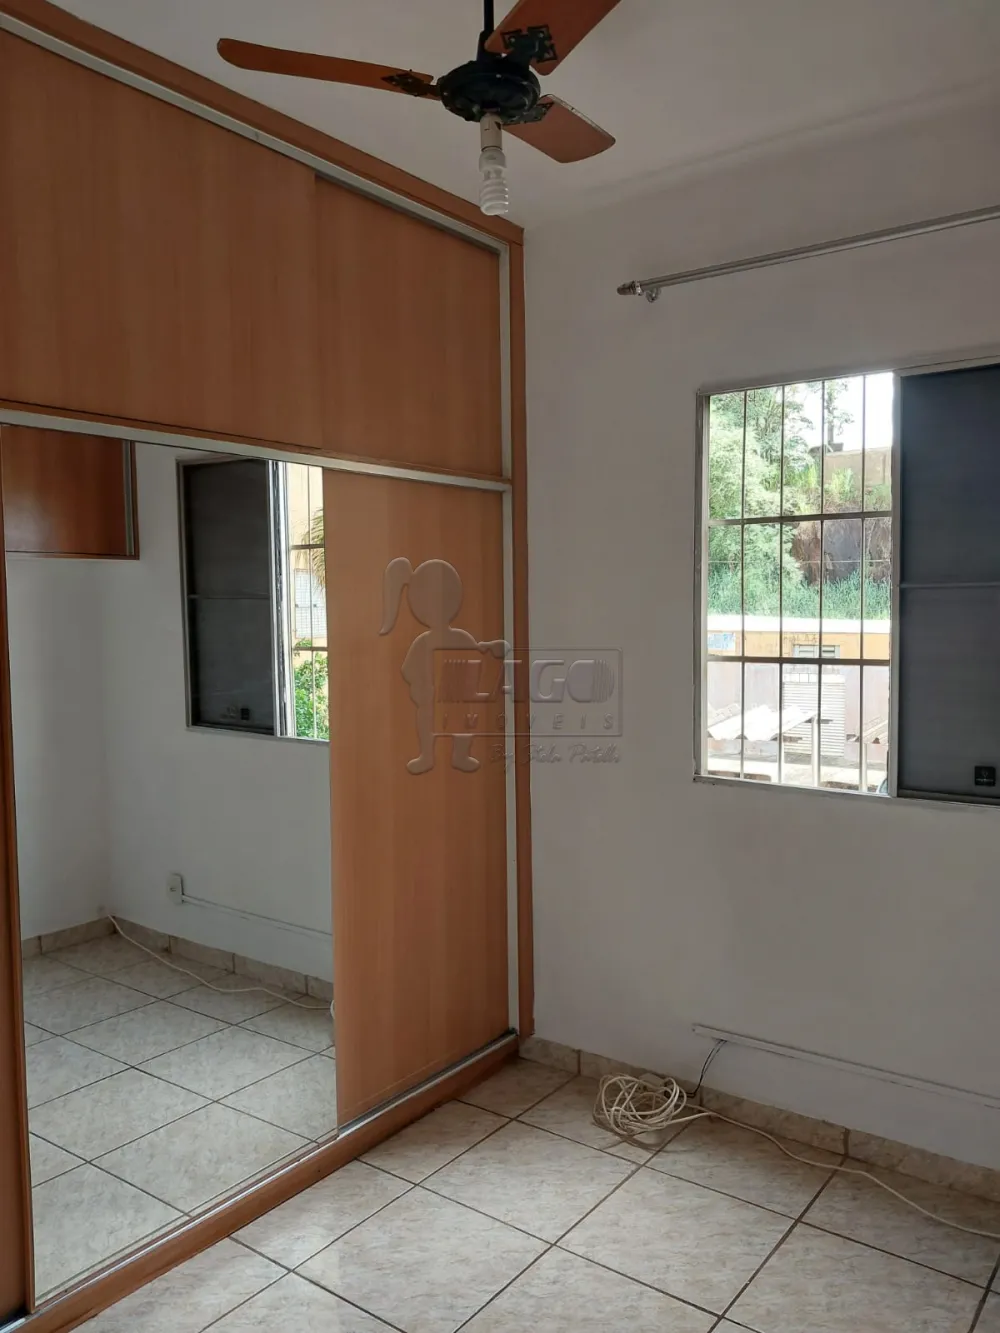 Comprar Apartamentos / Padrão em Ribeirão Preto R$ 160.000,00 - Foto 14